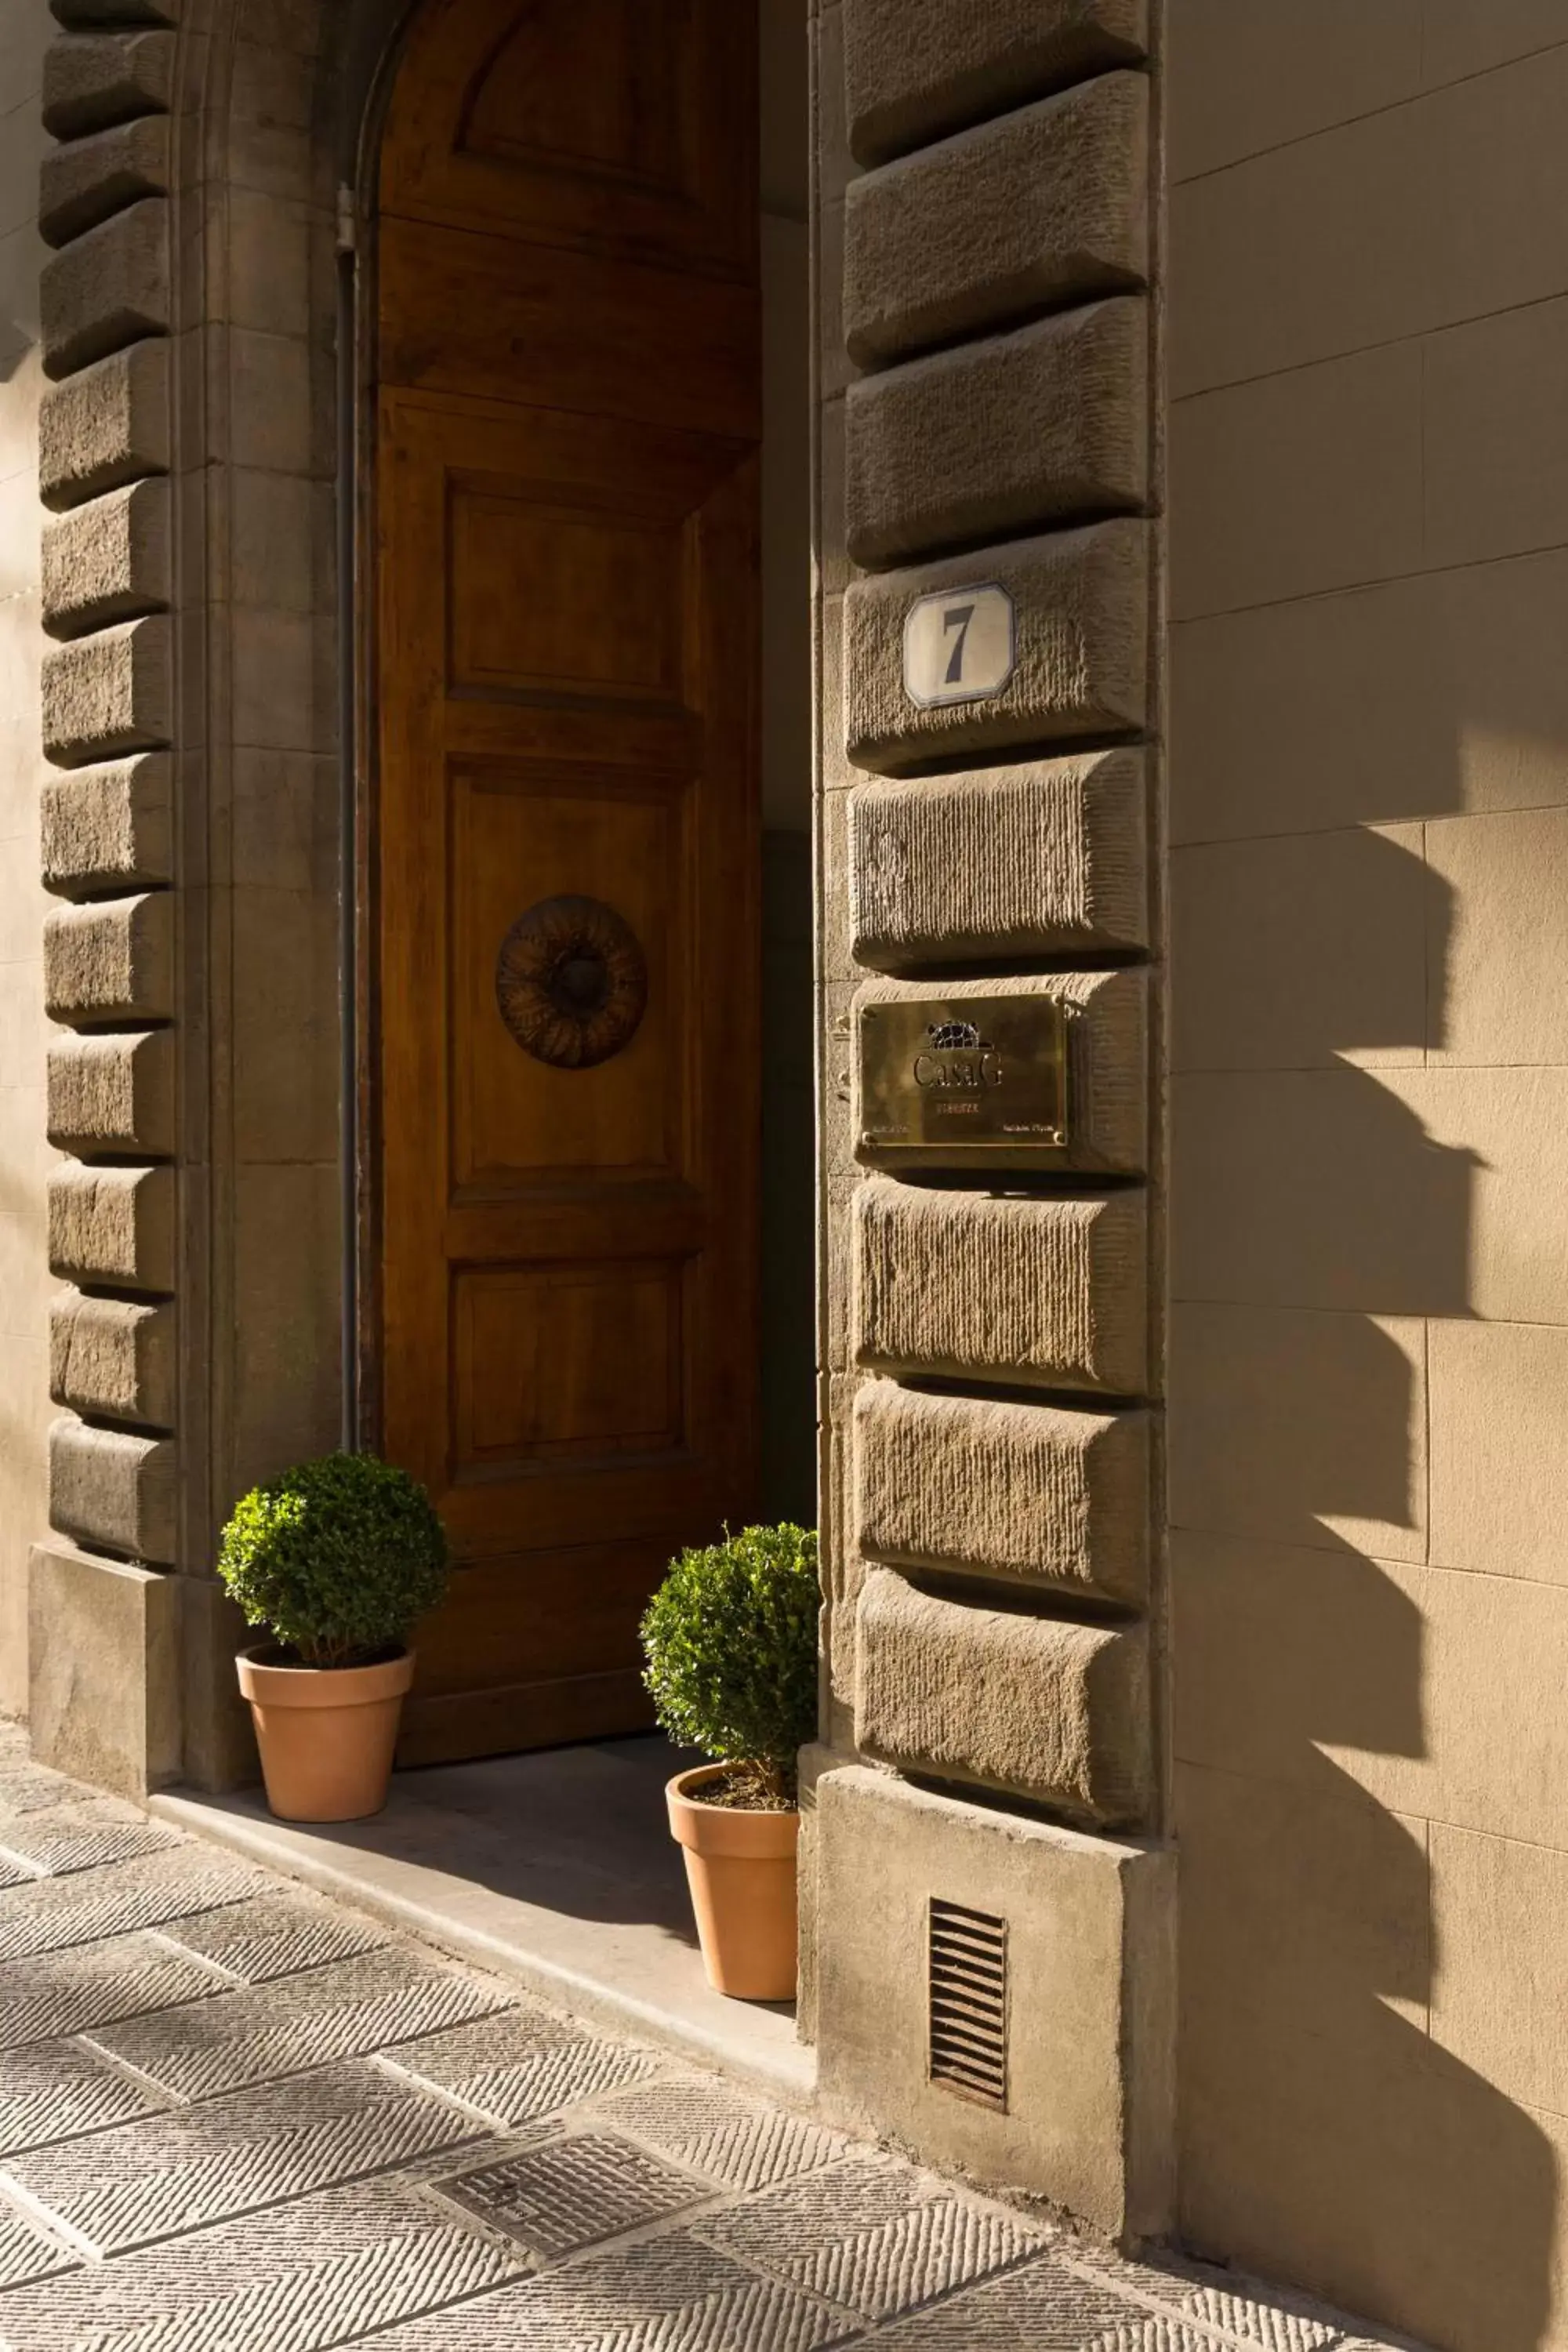 Property building, Facade/Entrance in Casa G. Firenze